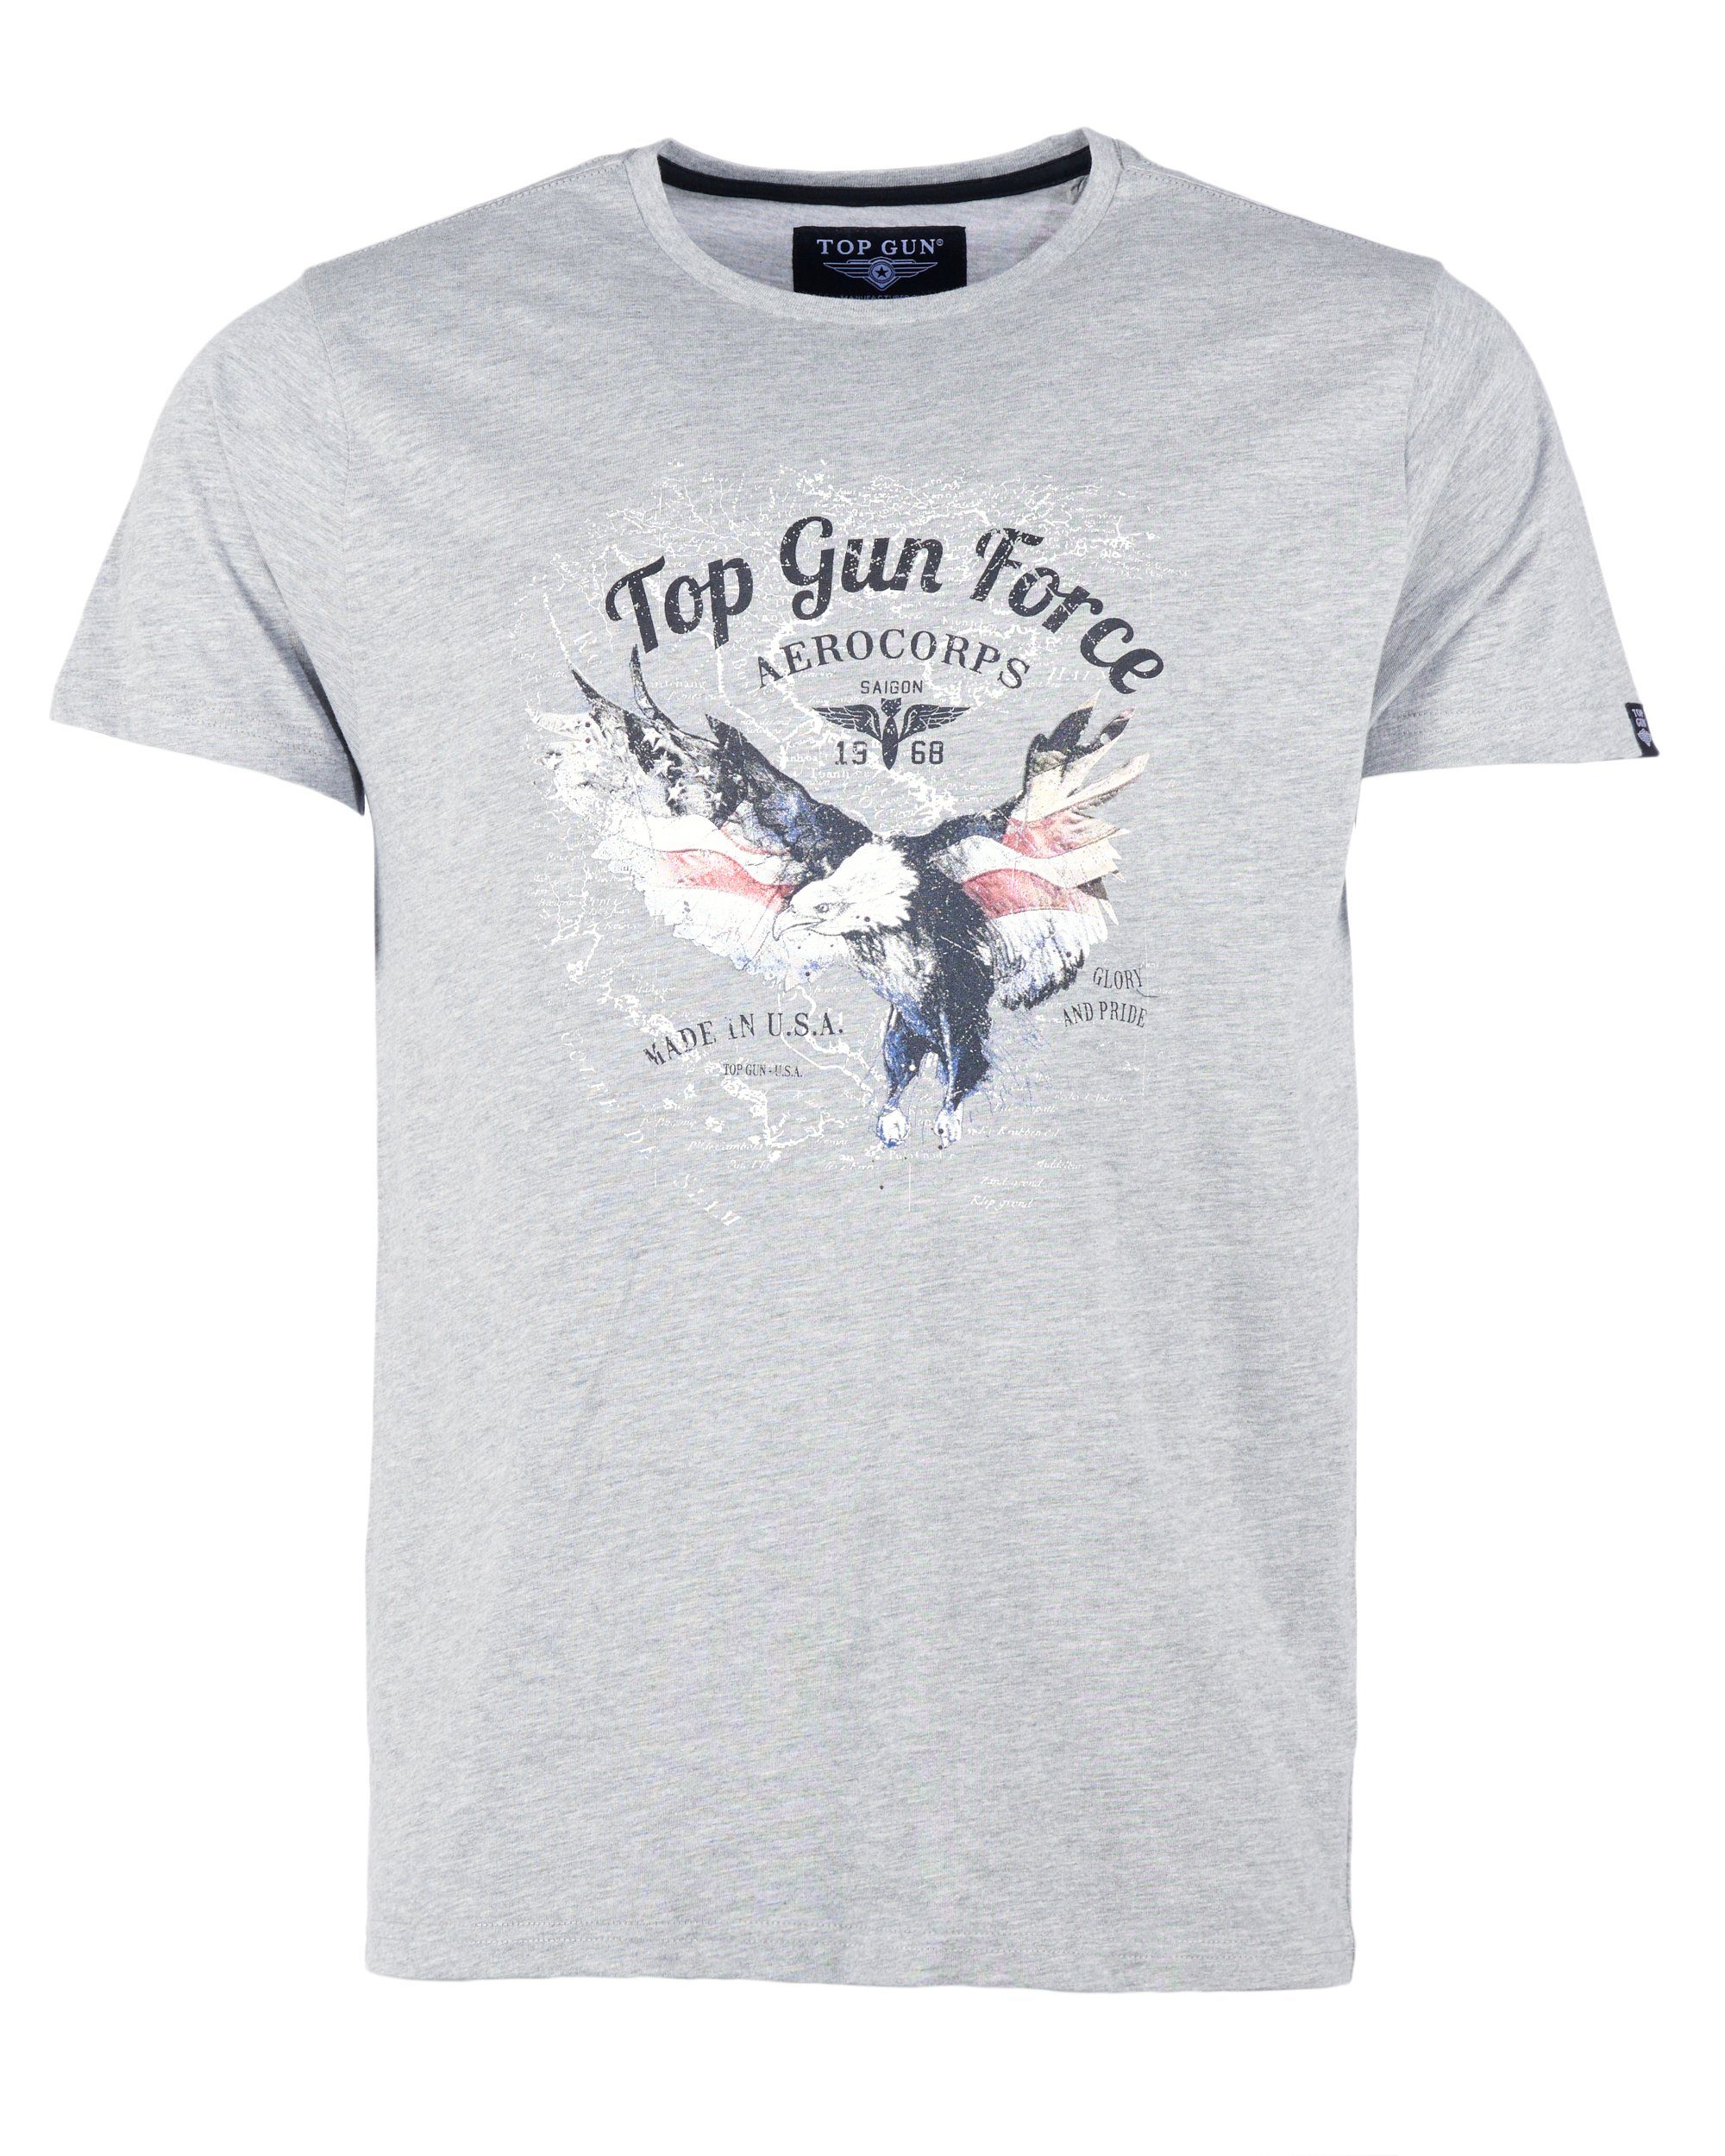 TG20213024 T-Shirt GUN TOP